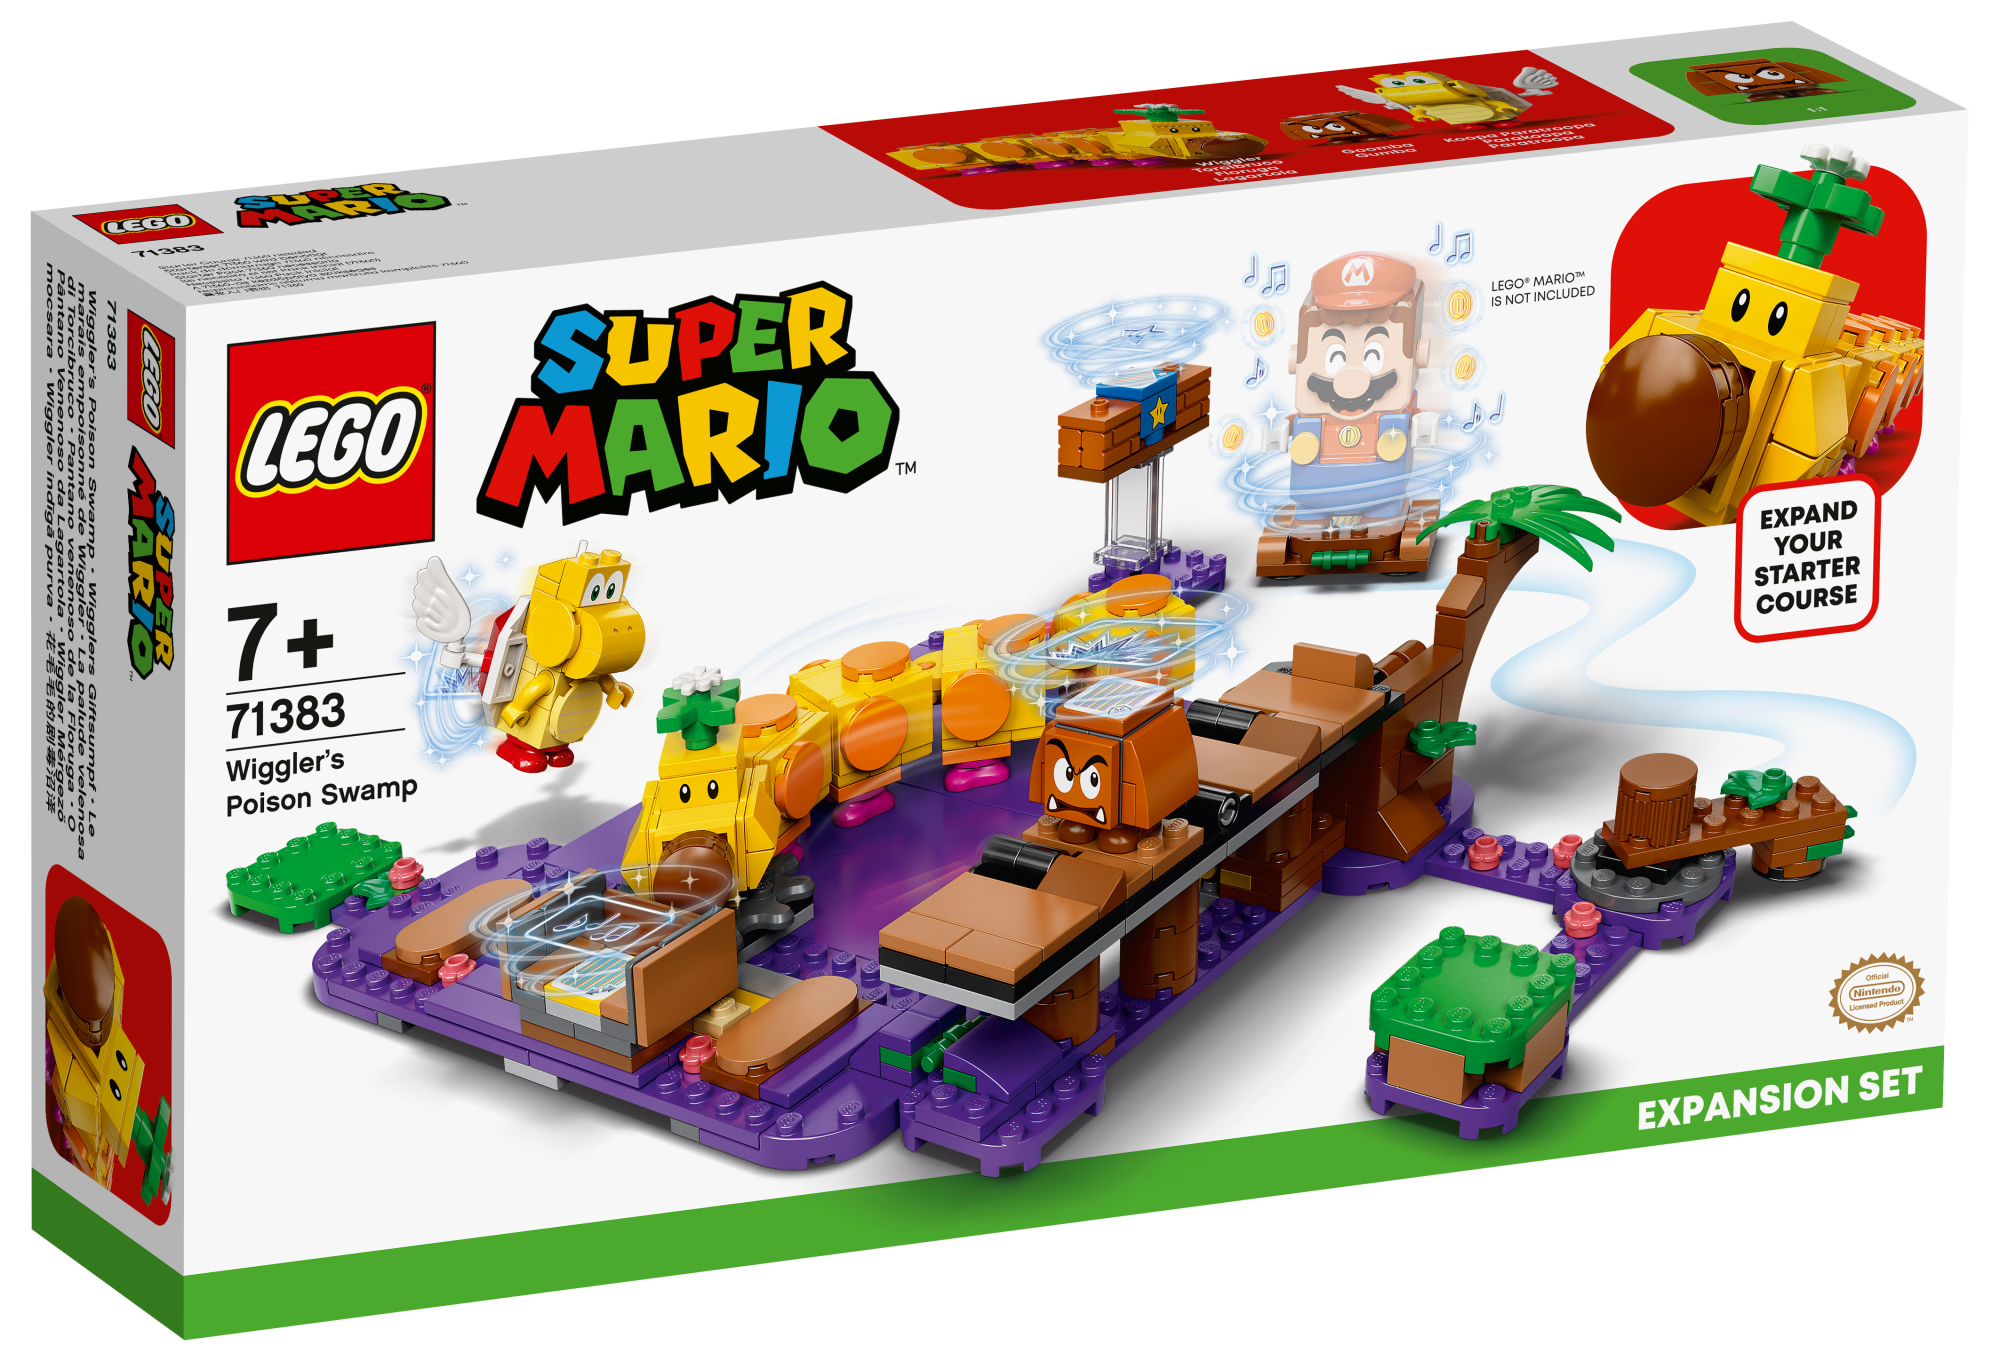 Lego: 71383 - Super Mario - Wiggler's Poison Swamp (Expansion Set)